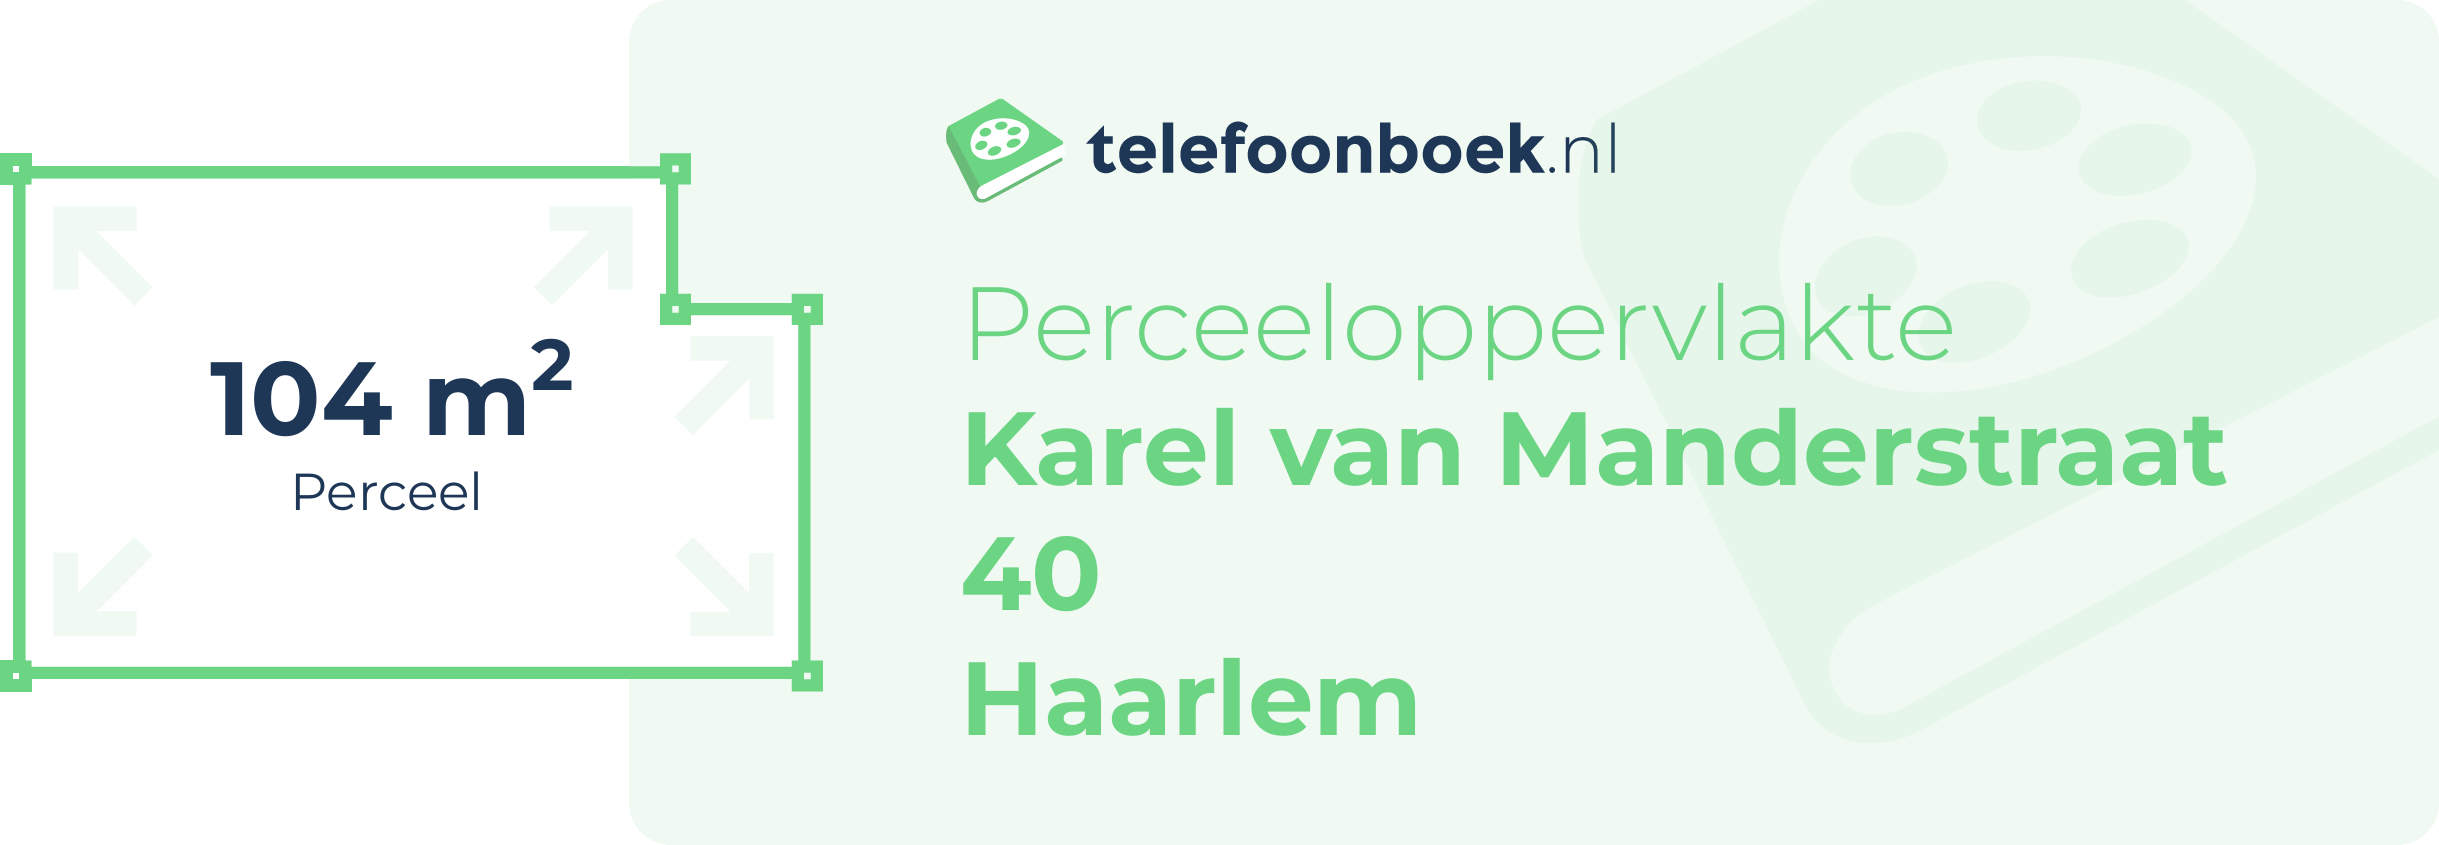 Perceeloppervlakte Karel Van Manderstraat 40 Haarlem